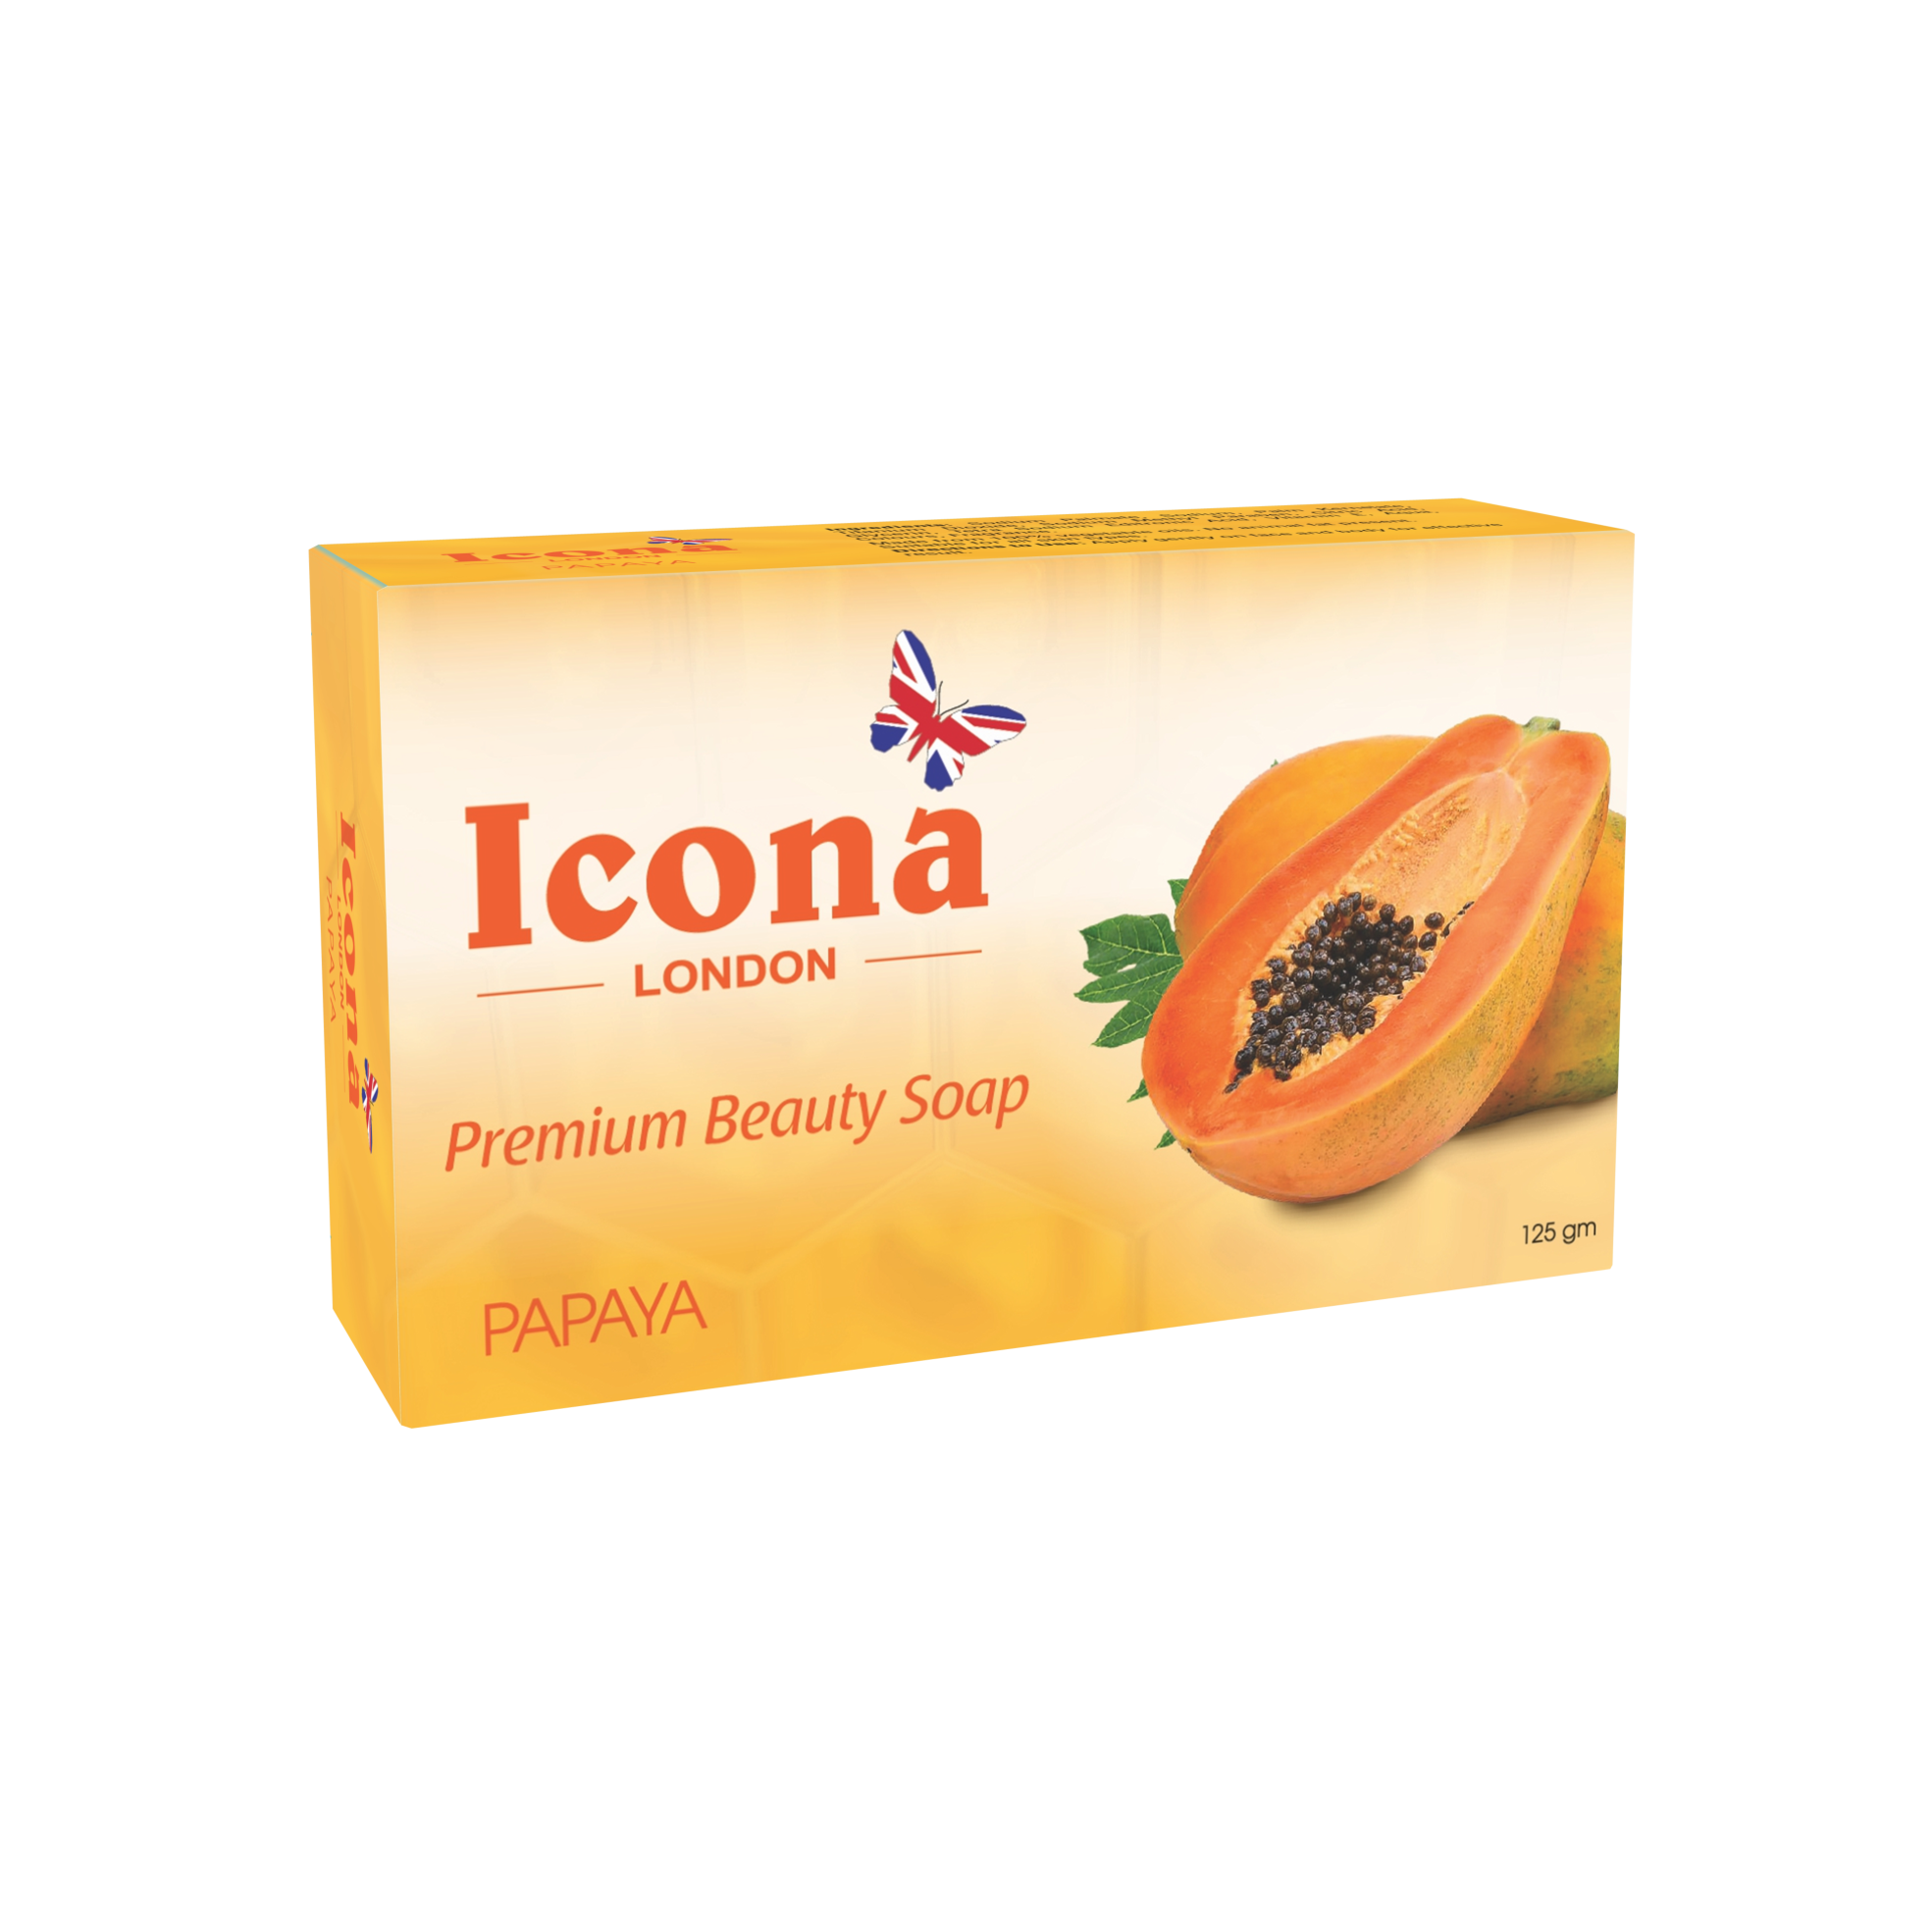 Icona London Beauty Soap (Papaya)